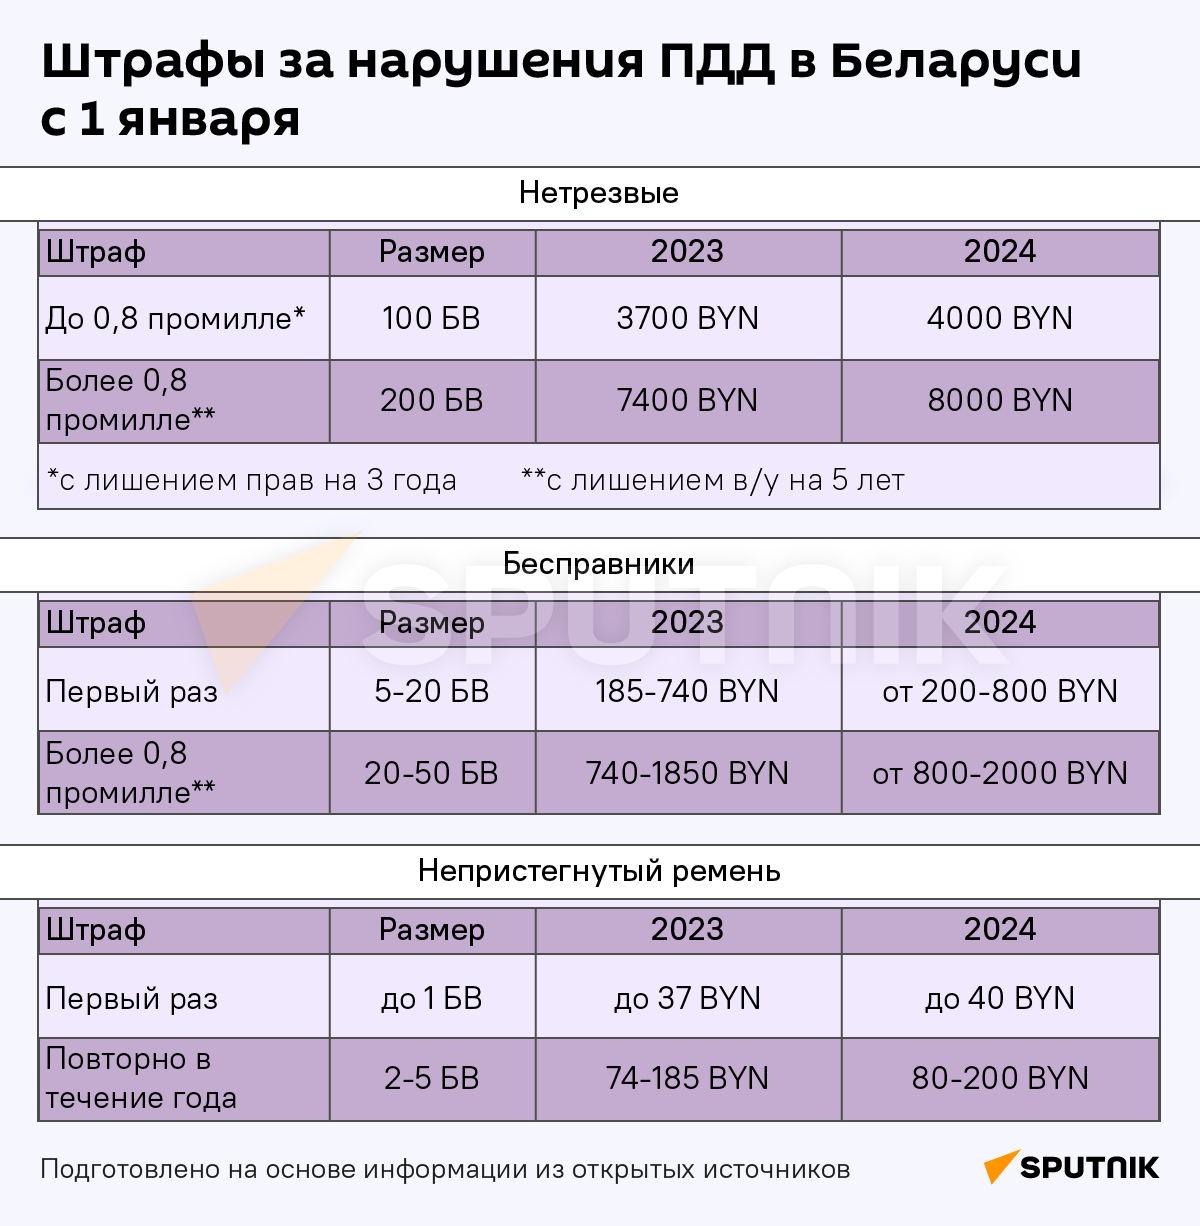 Как изменились штрафы, пошлины и пособия в Беларуси с 1 января - Sputnik Беларусь